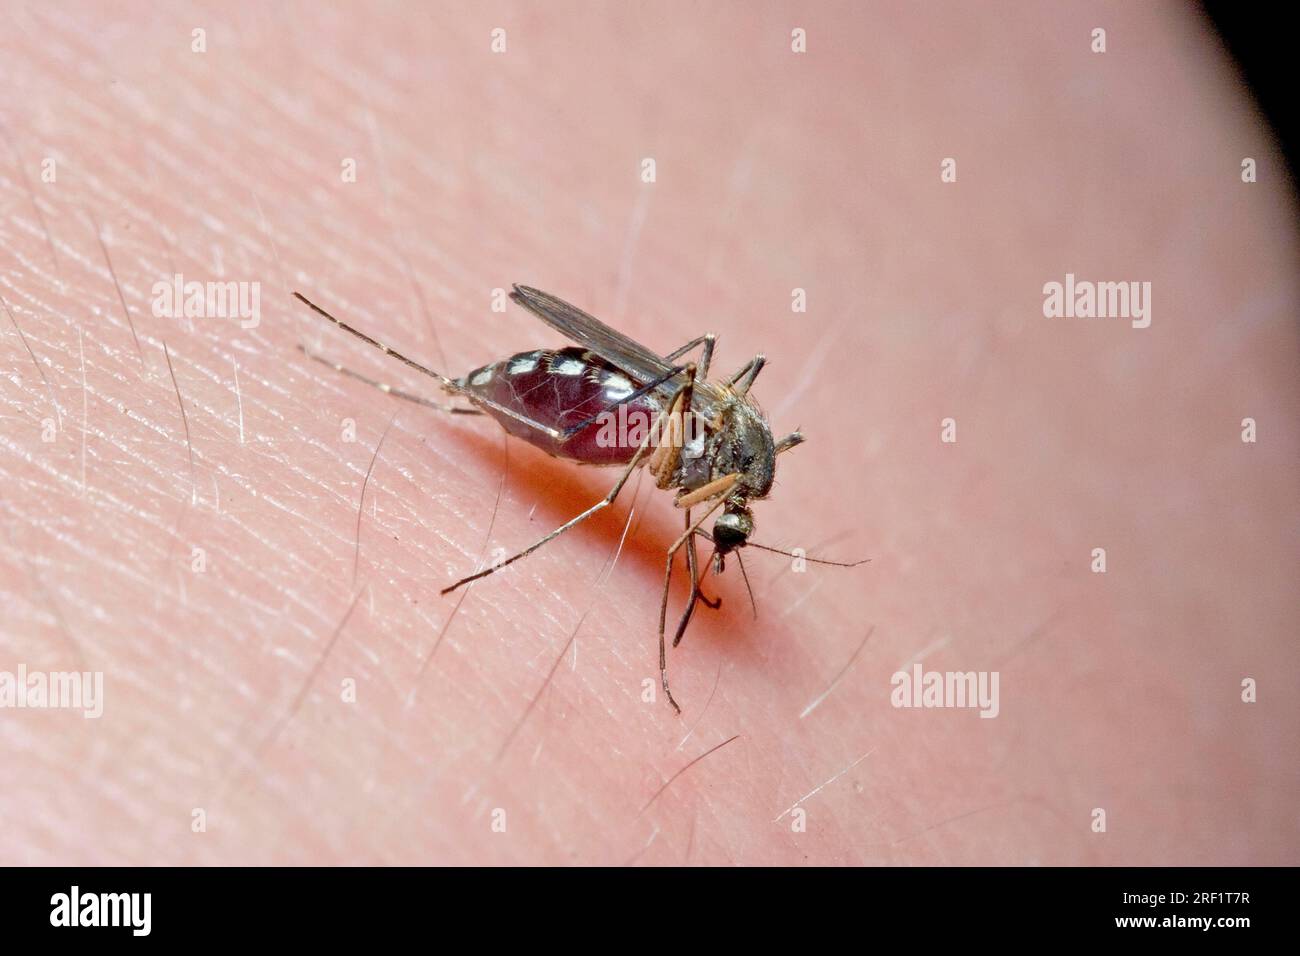 Zanzara della casa sulla pelle umana (Culex pipiens), Germania Foto Stock